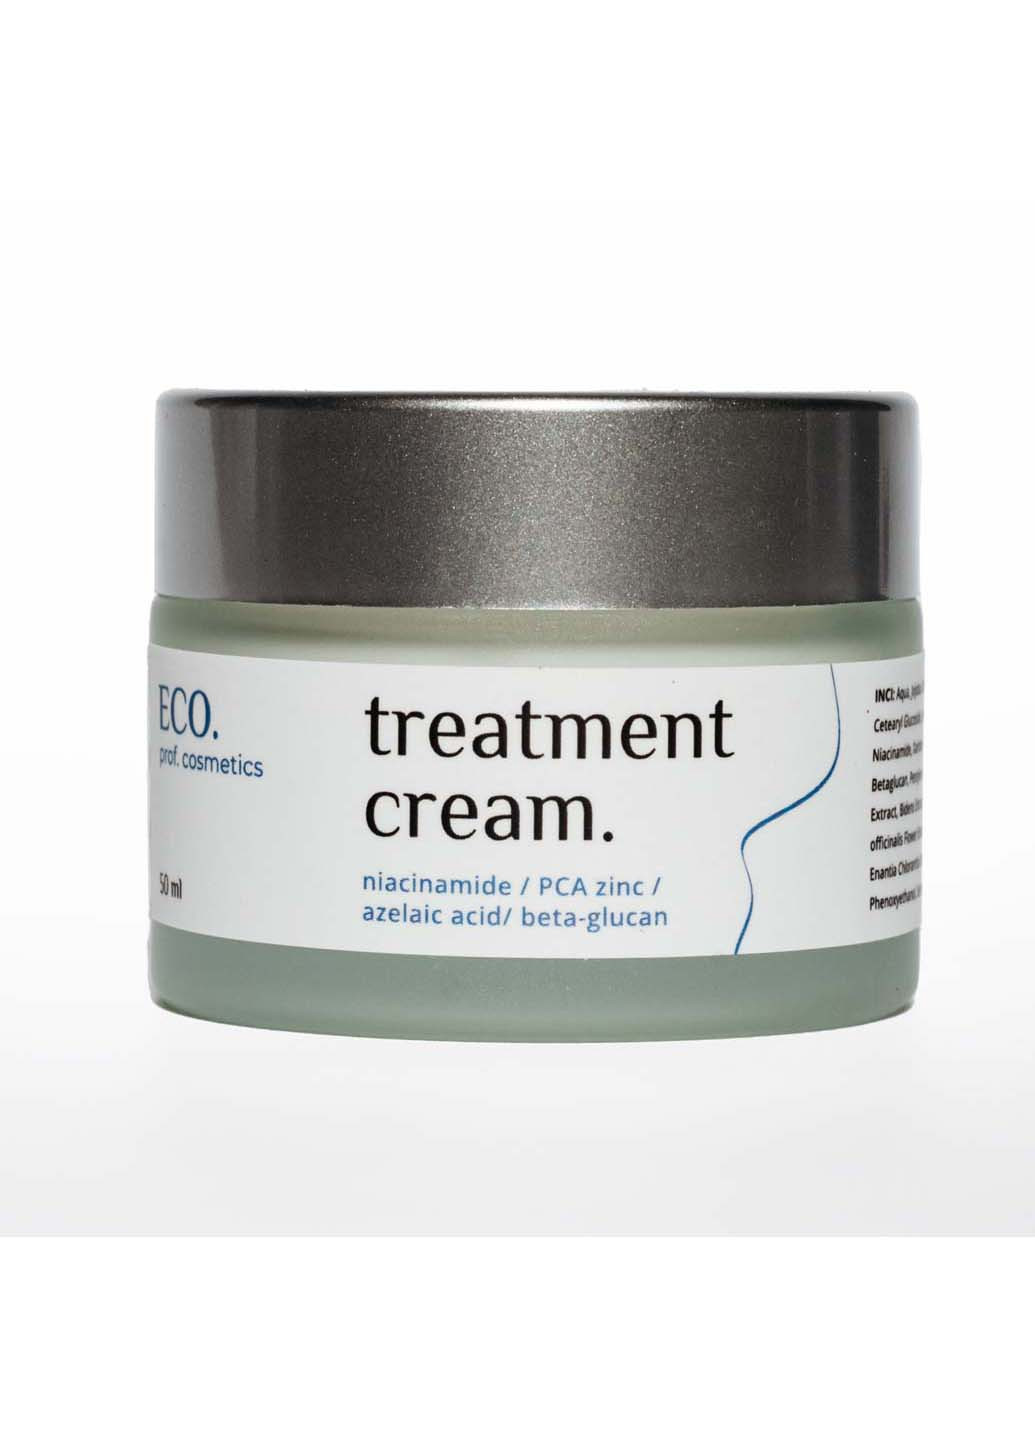 Ламелярный лечебный крем для жирной и комбинированной кожи Treatment cream 50 мл Eco.prof.cosmetics (266997284)